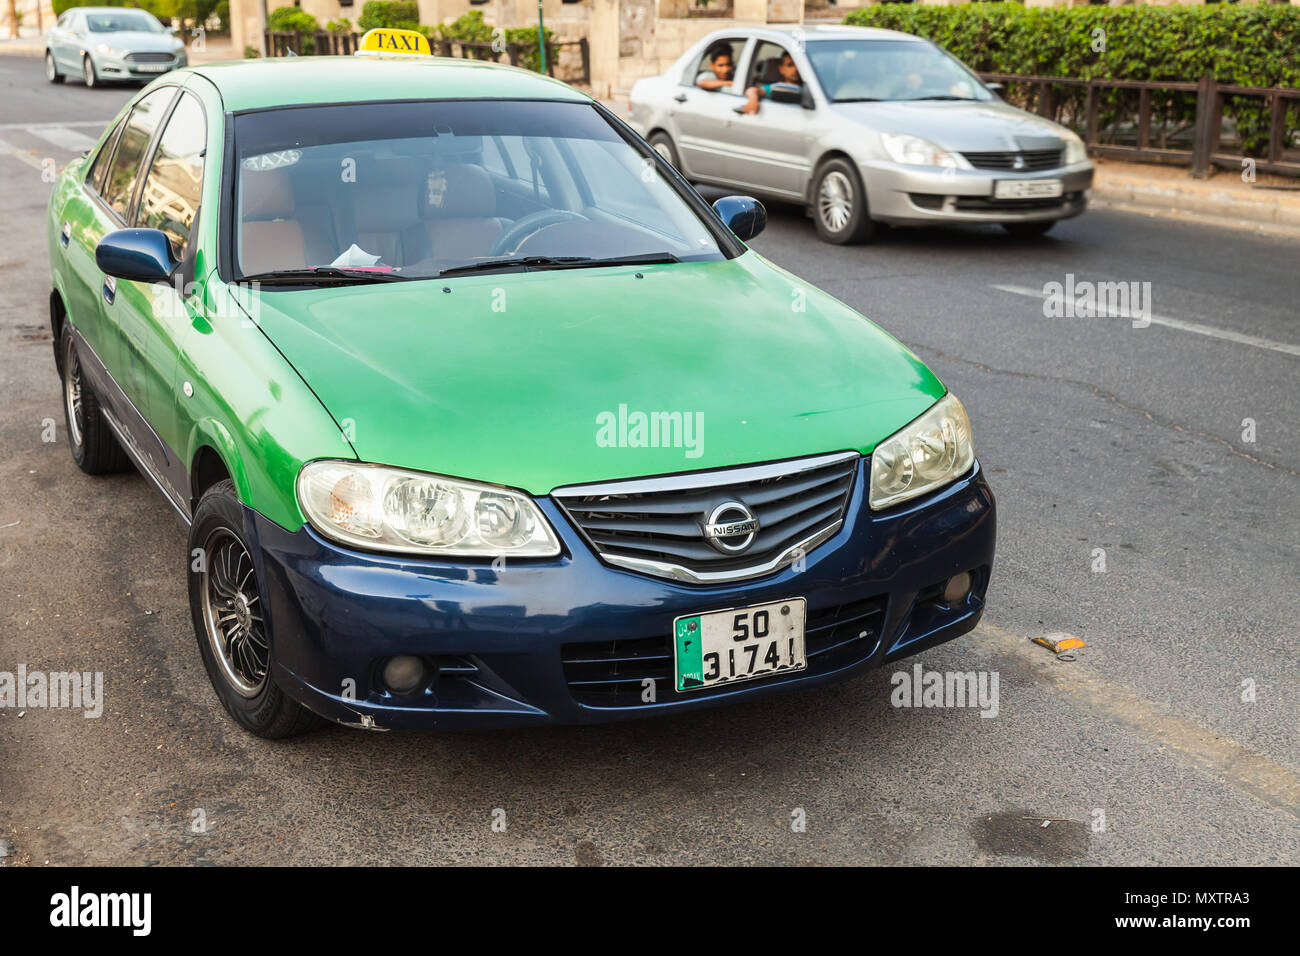 Aqaba, Jordanien - 18. Mai 2018: Die Grünen Nissan Auto des Wadi Rum Taxiunternehmen steht auf einer Straße in Aqaba geparkt Stockfoto